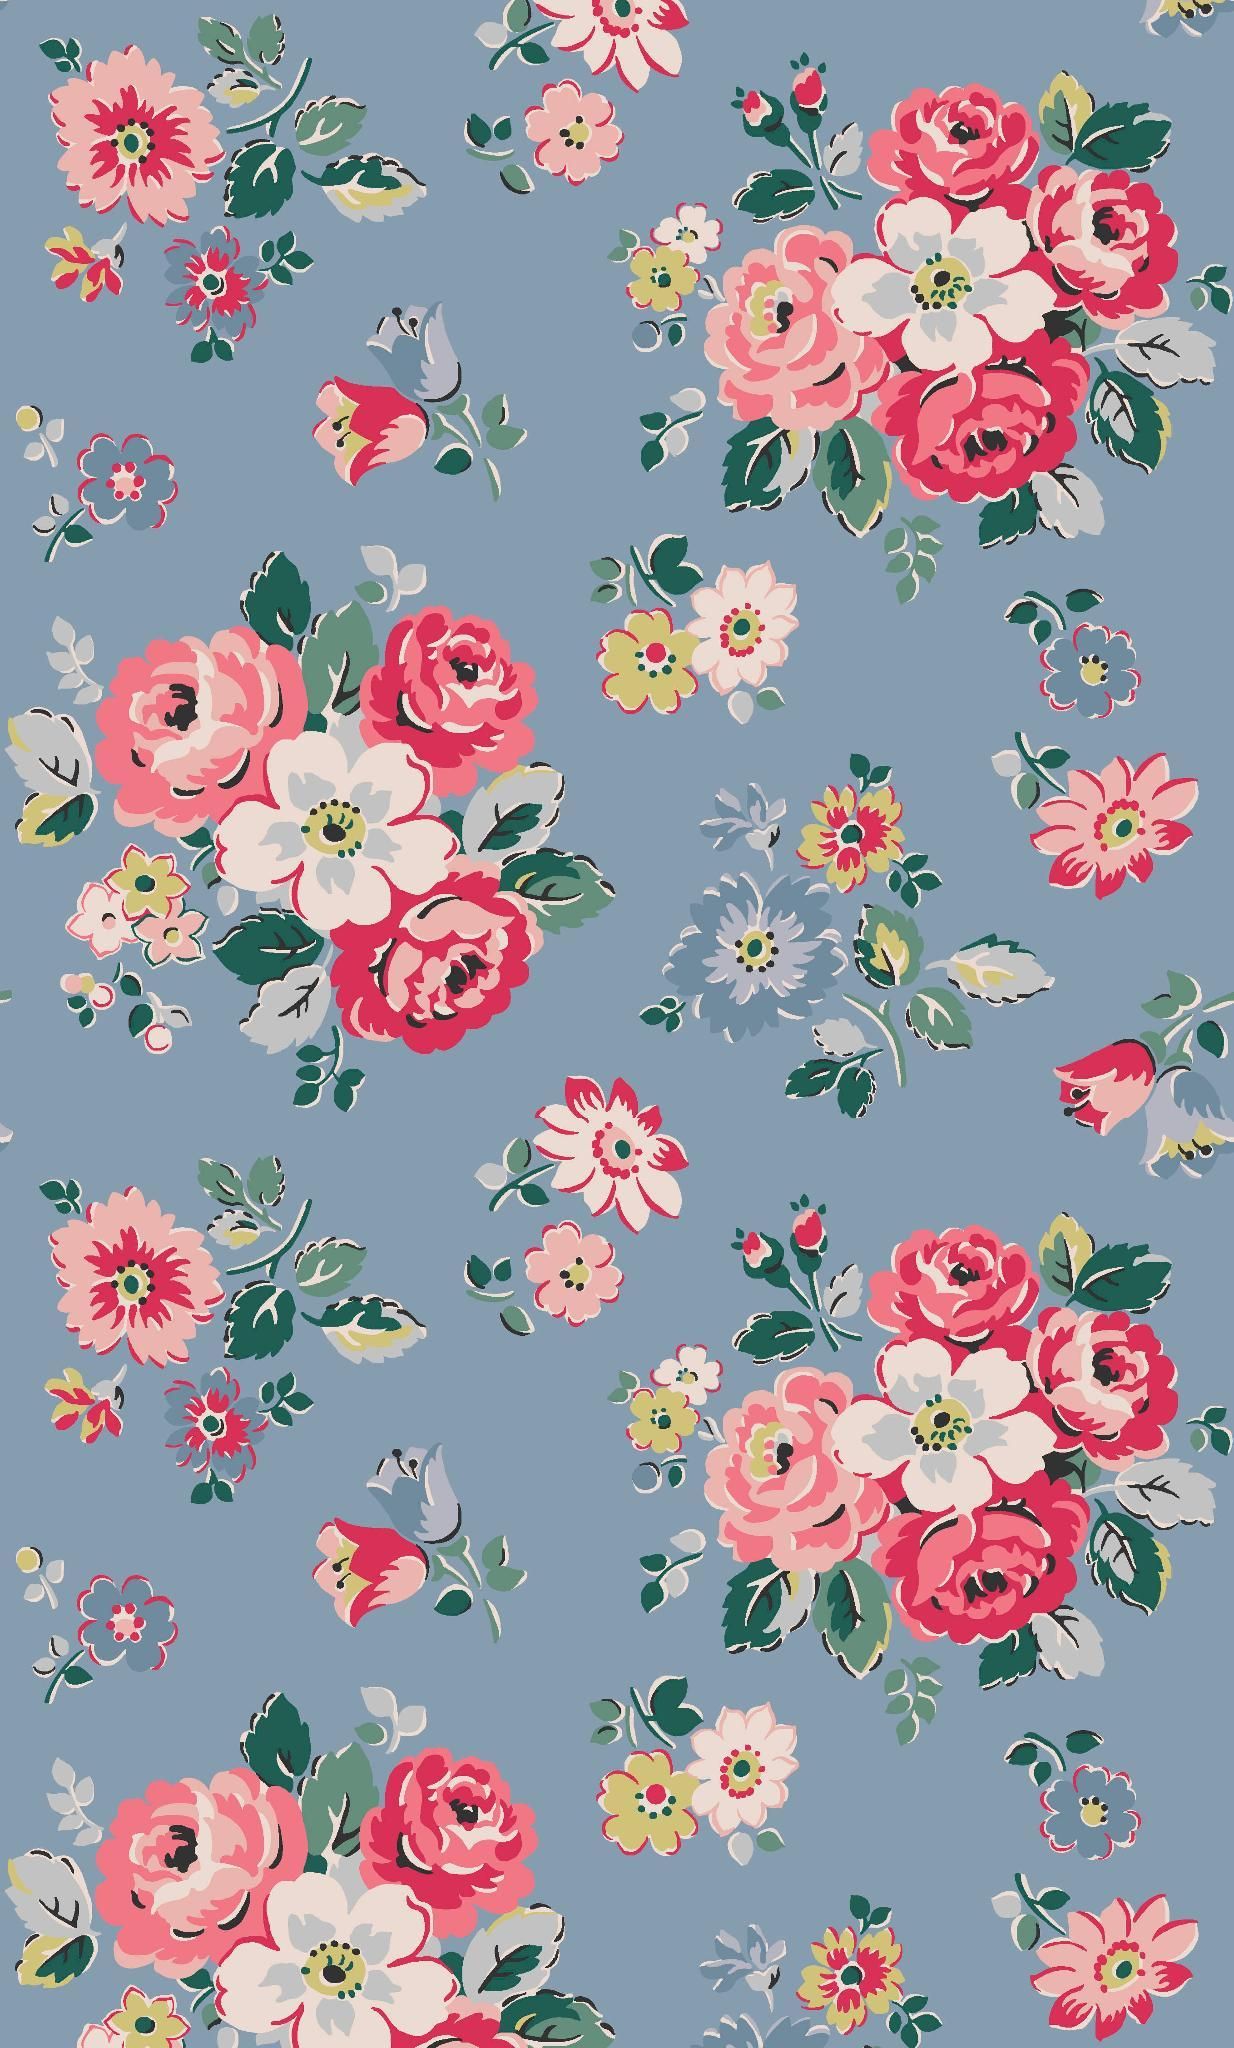 flower pattern wallpaper,pattern,pink,floral design,flower,botany